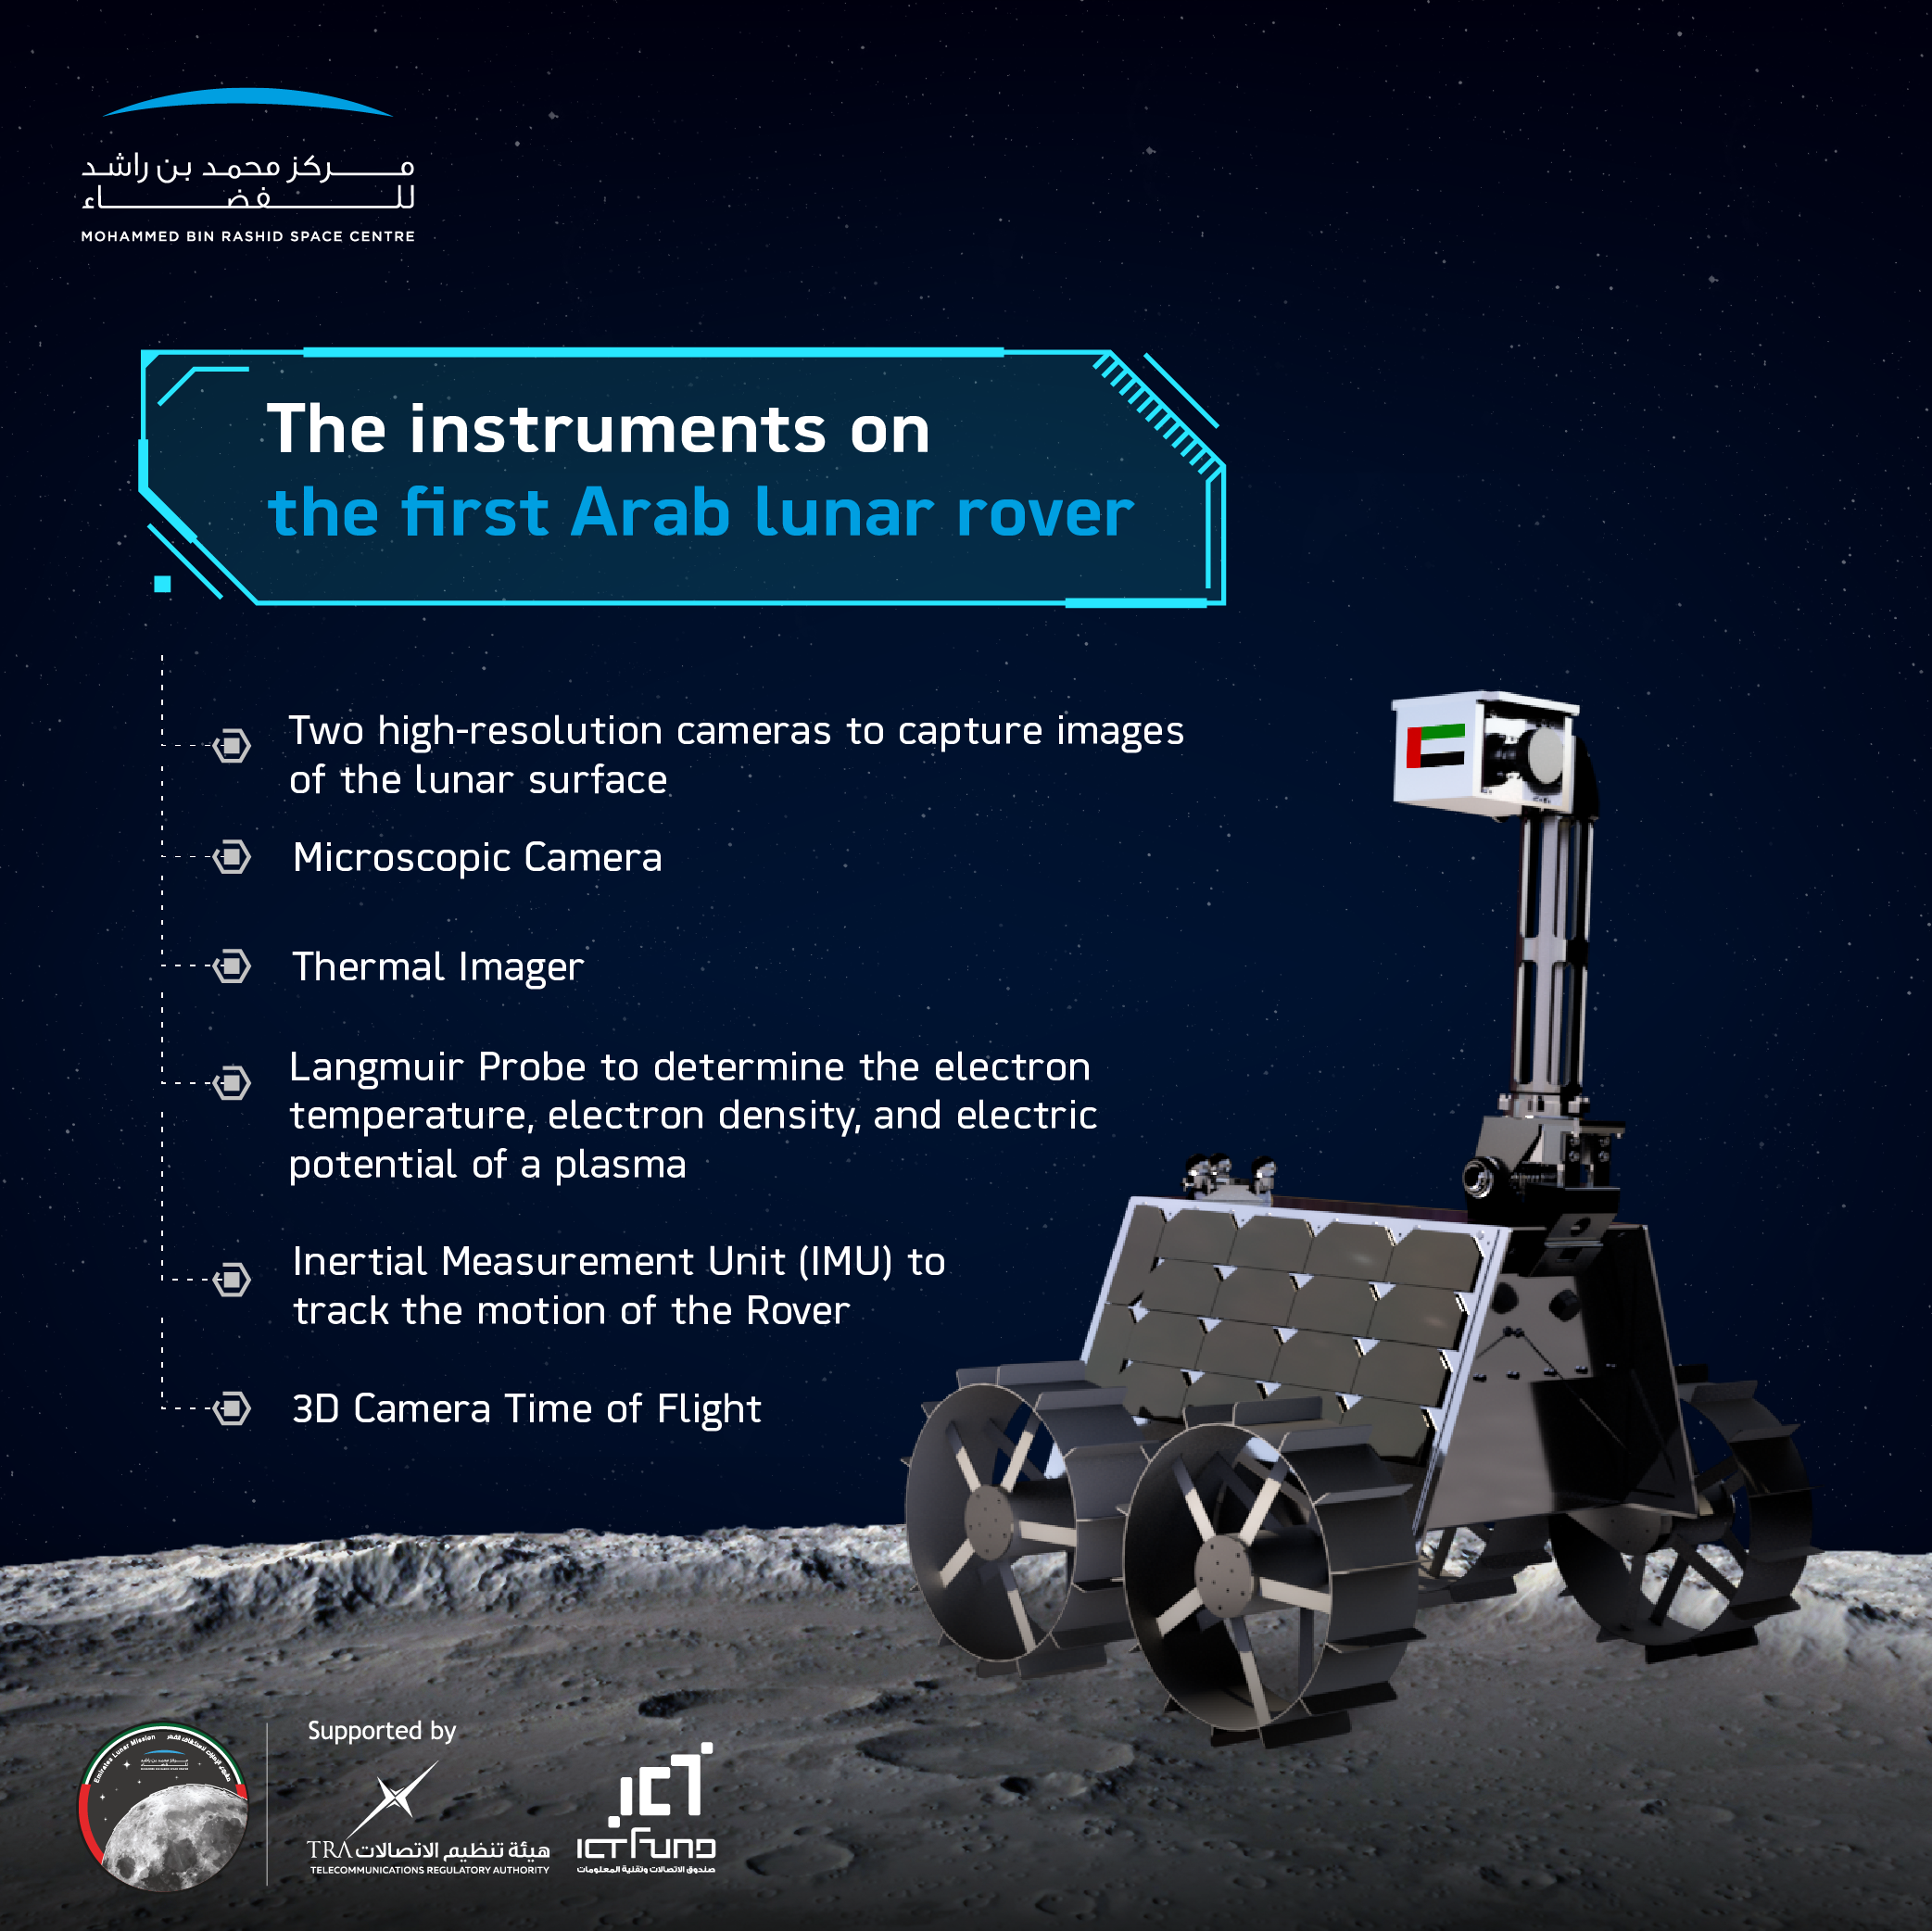 Representación de un artista del vehículo lunar propuesto por los Emiratos Árabes Unidos visto en la superficie lunar.